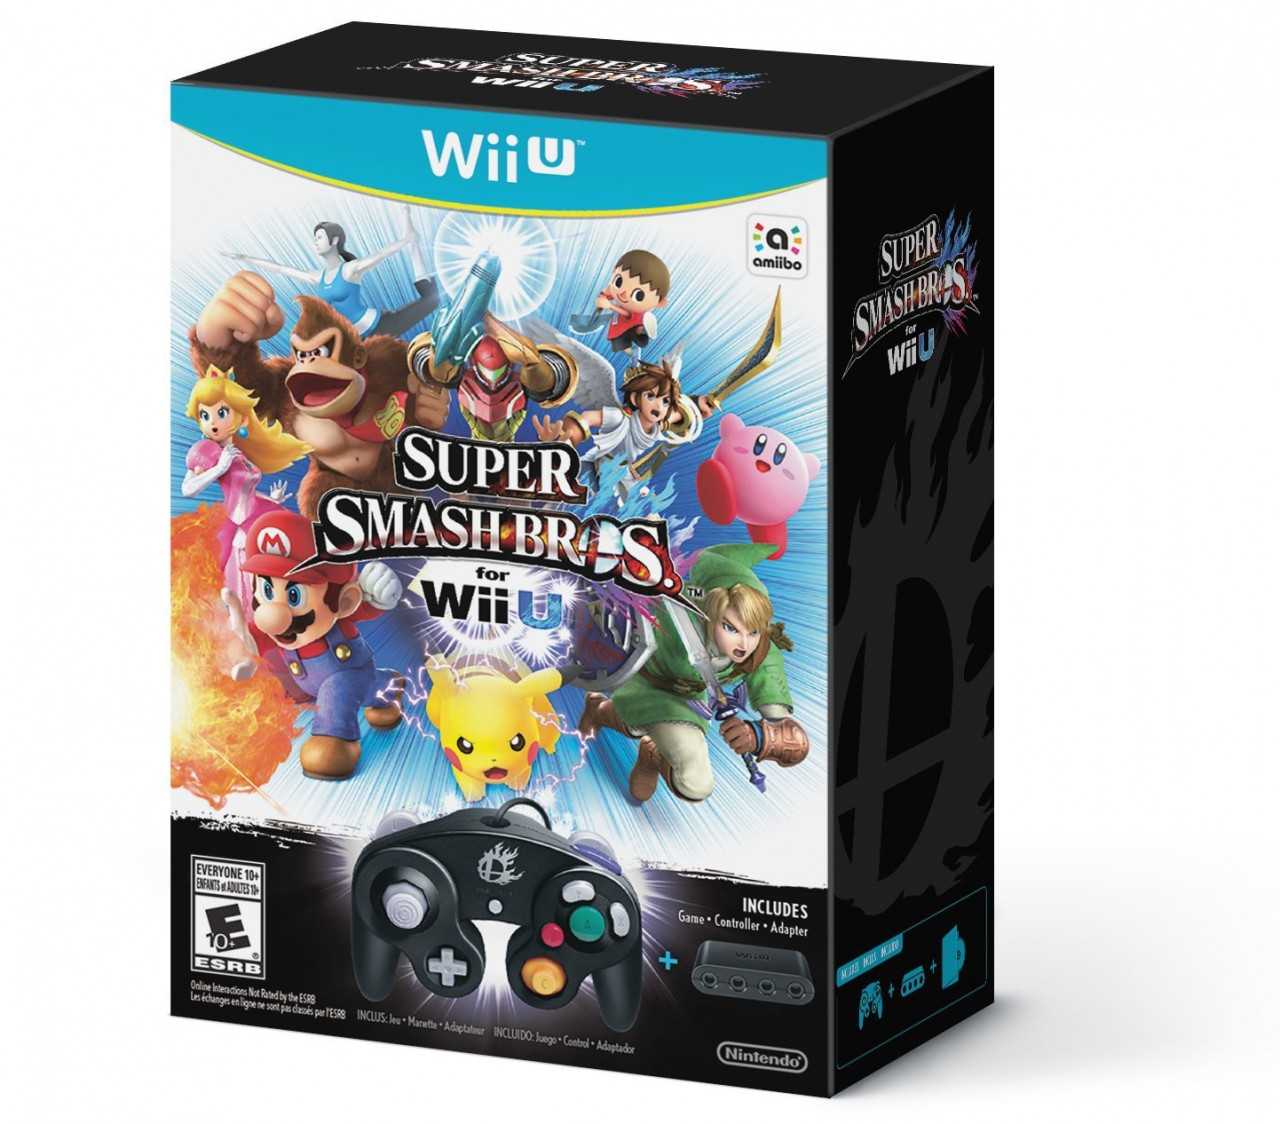 Smash Bros. WiiU + Gamecube Controller / Adapter Bundle Box